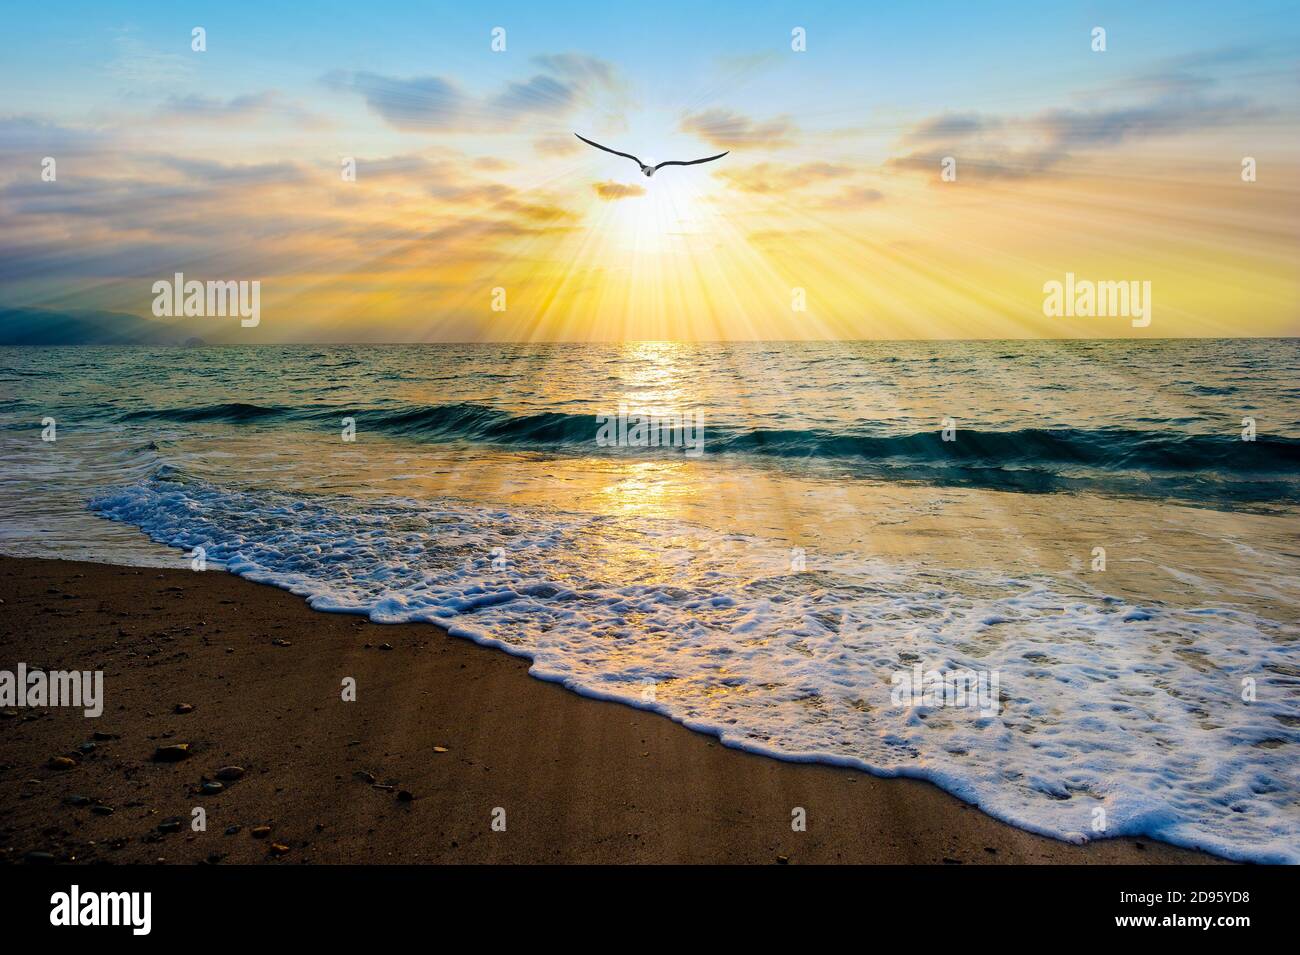 Eine Vogel Silhouette fliegt dem Licht als Sonne entgegen Strahlen gehen aus dem Ocean Sunset Sky Stockfoto